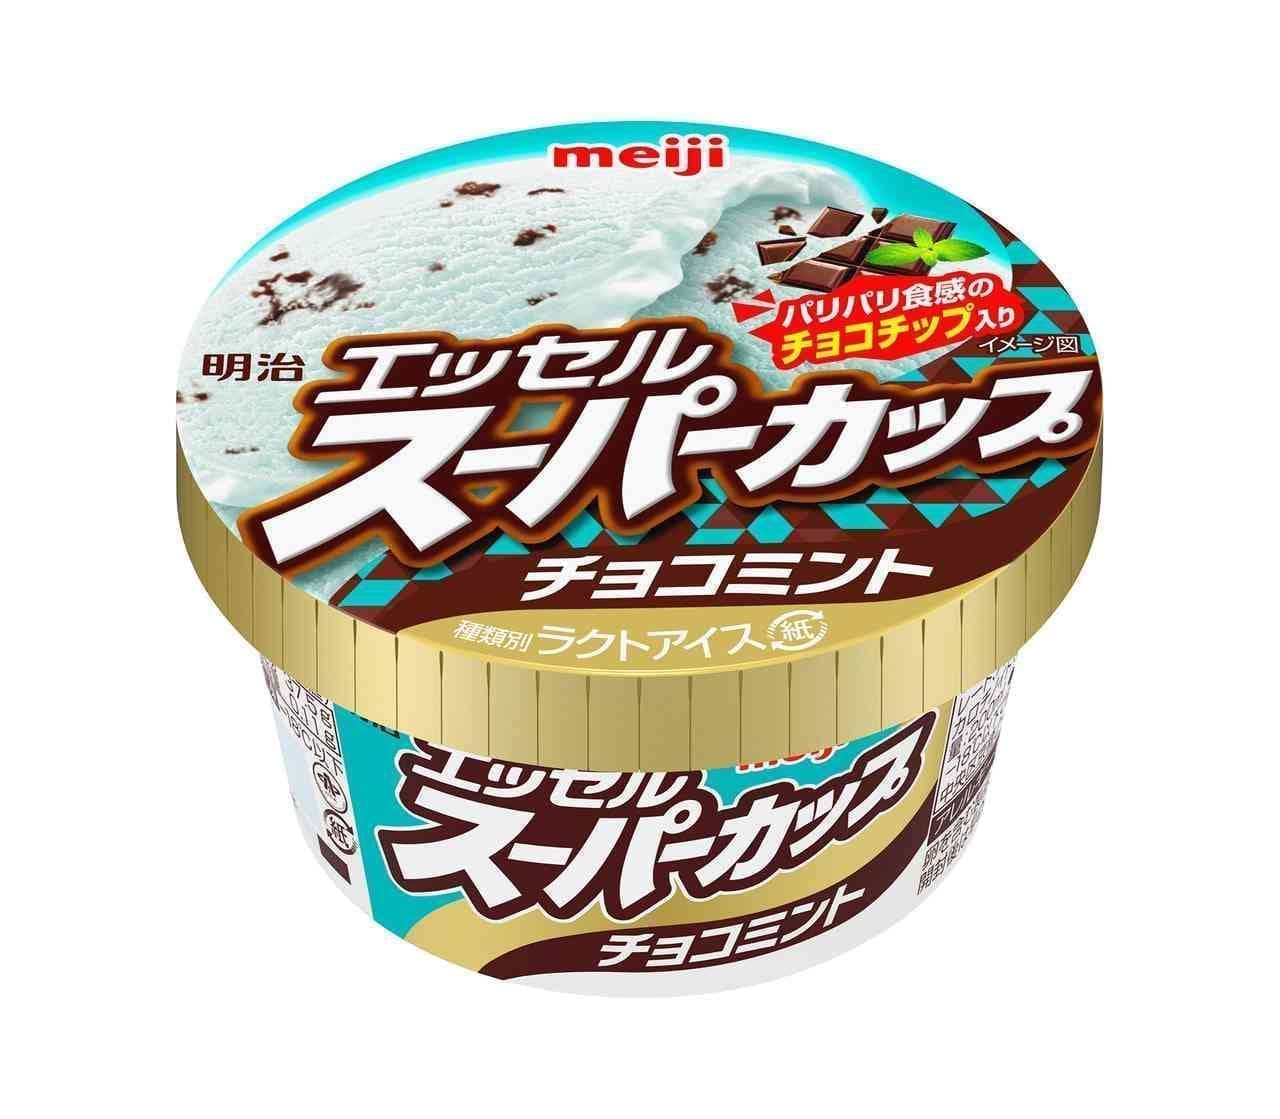 Meiji "Essel Super Cup Choco Mint".